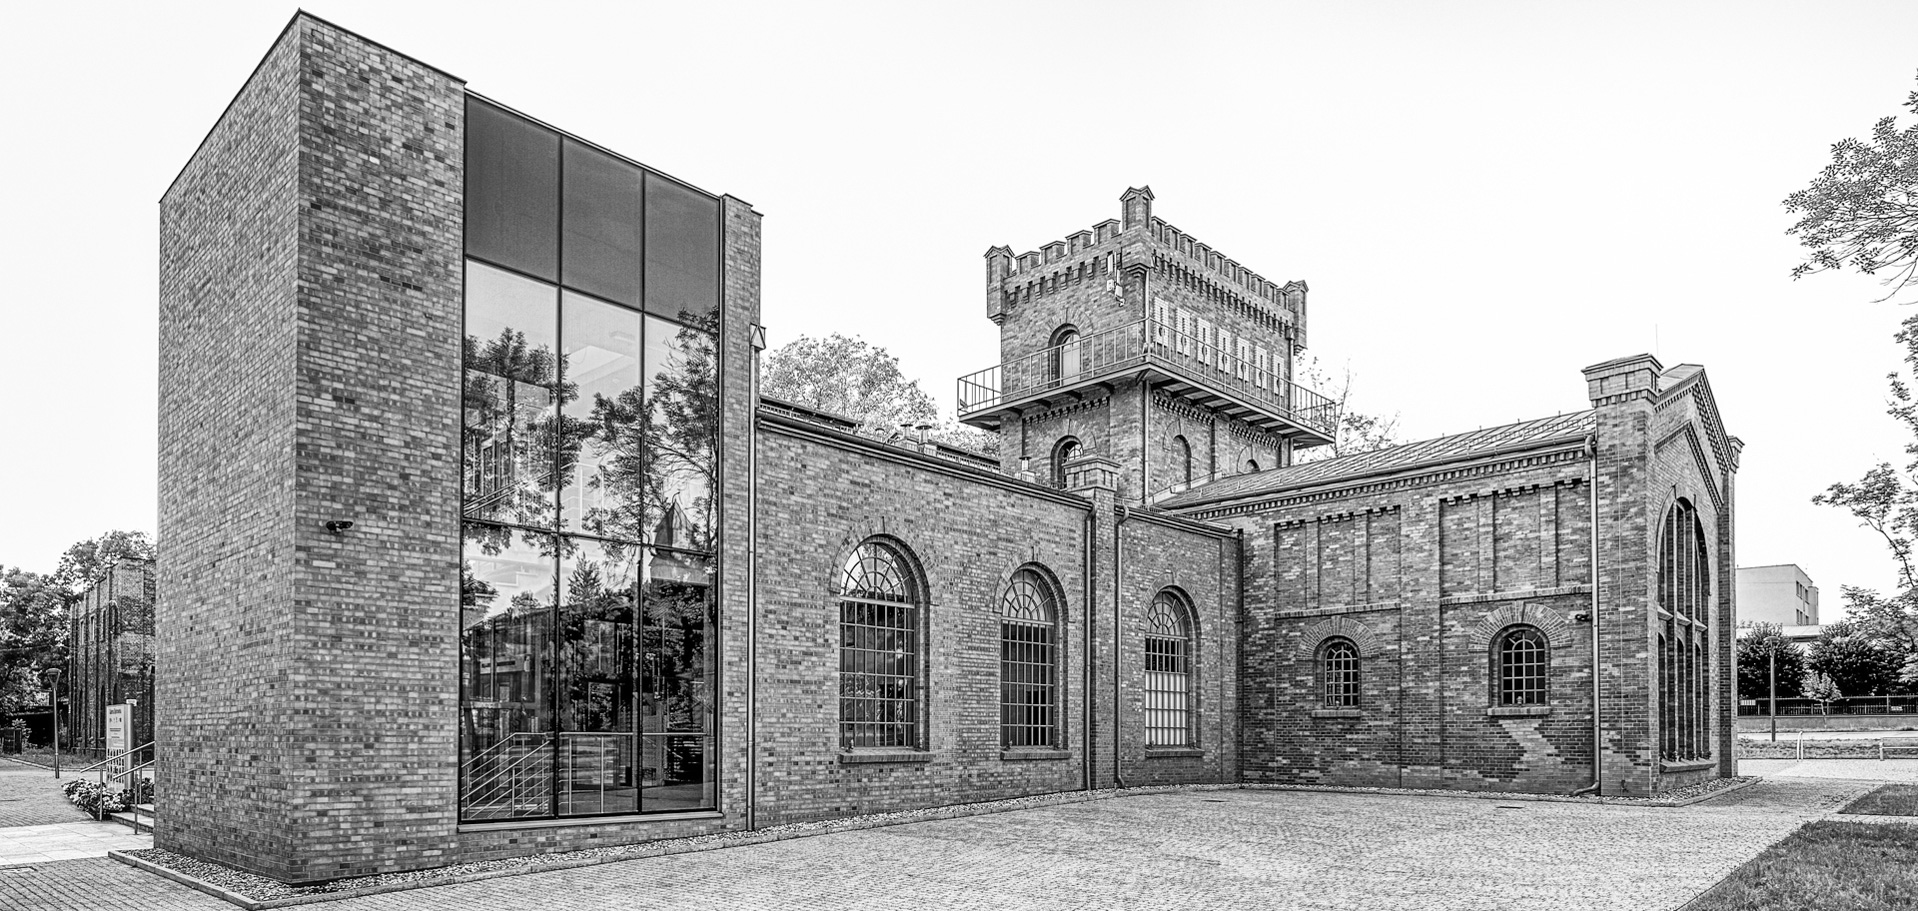 Galerie für moderne Kunst „Elektrownia“, Czeladź, Bauzeit 1902-1908 / 2012-2013, Architekt Józef Pius Dziekoński